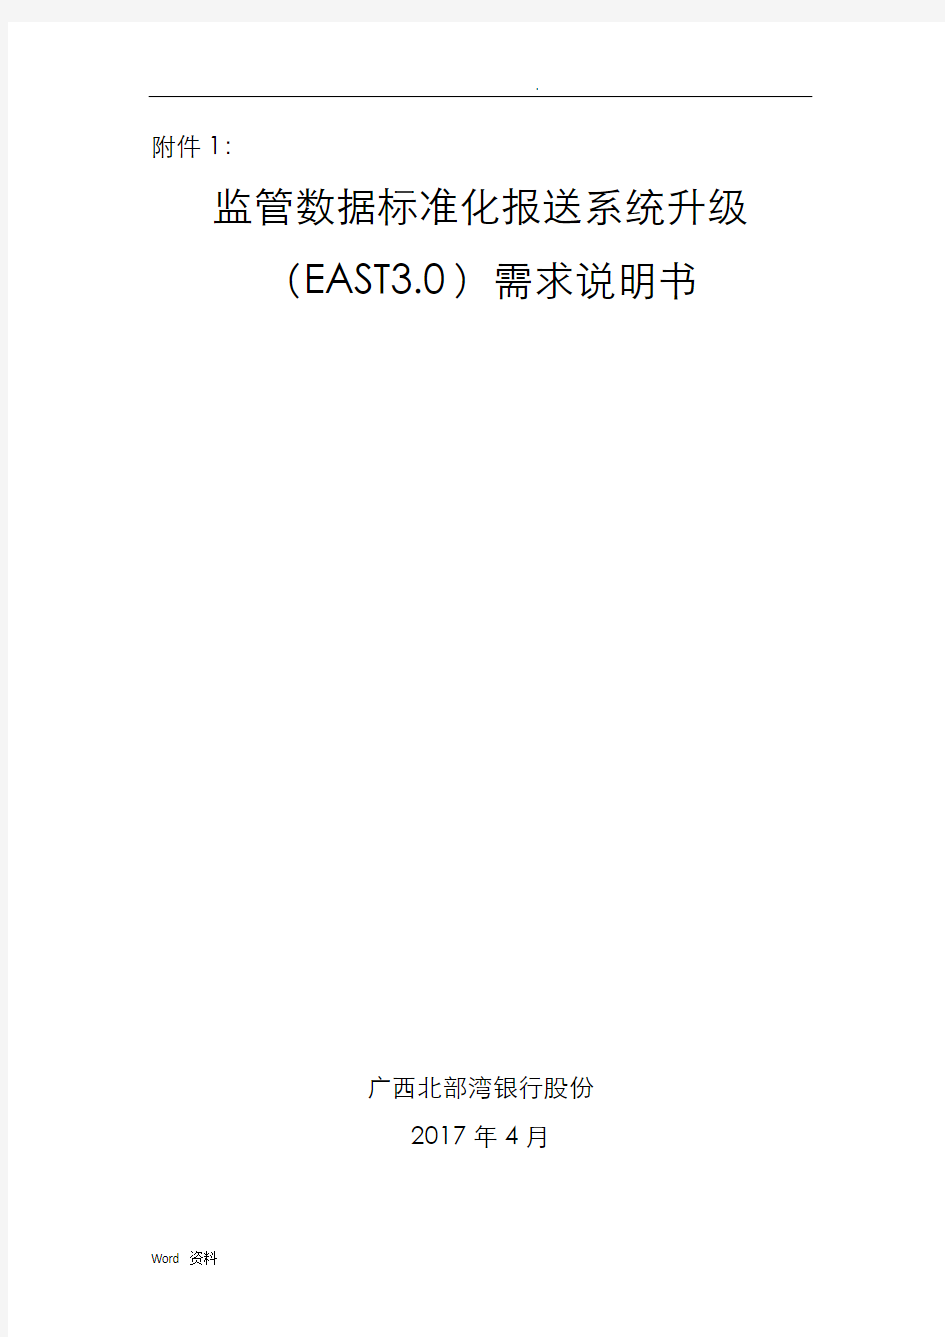 银监会监管数据标准化报送系统(EAST0)